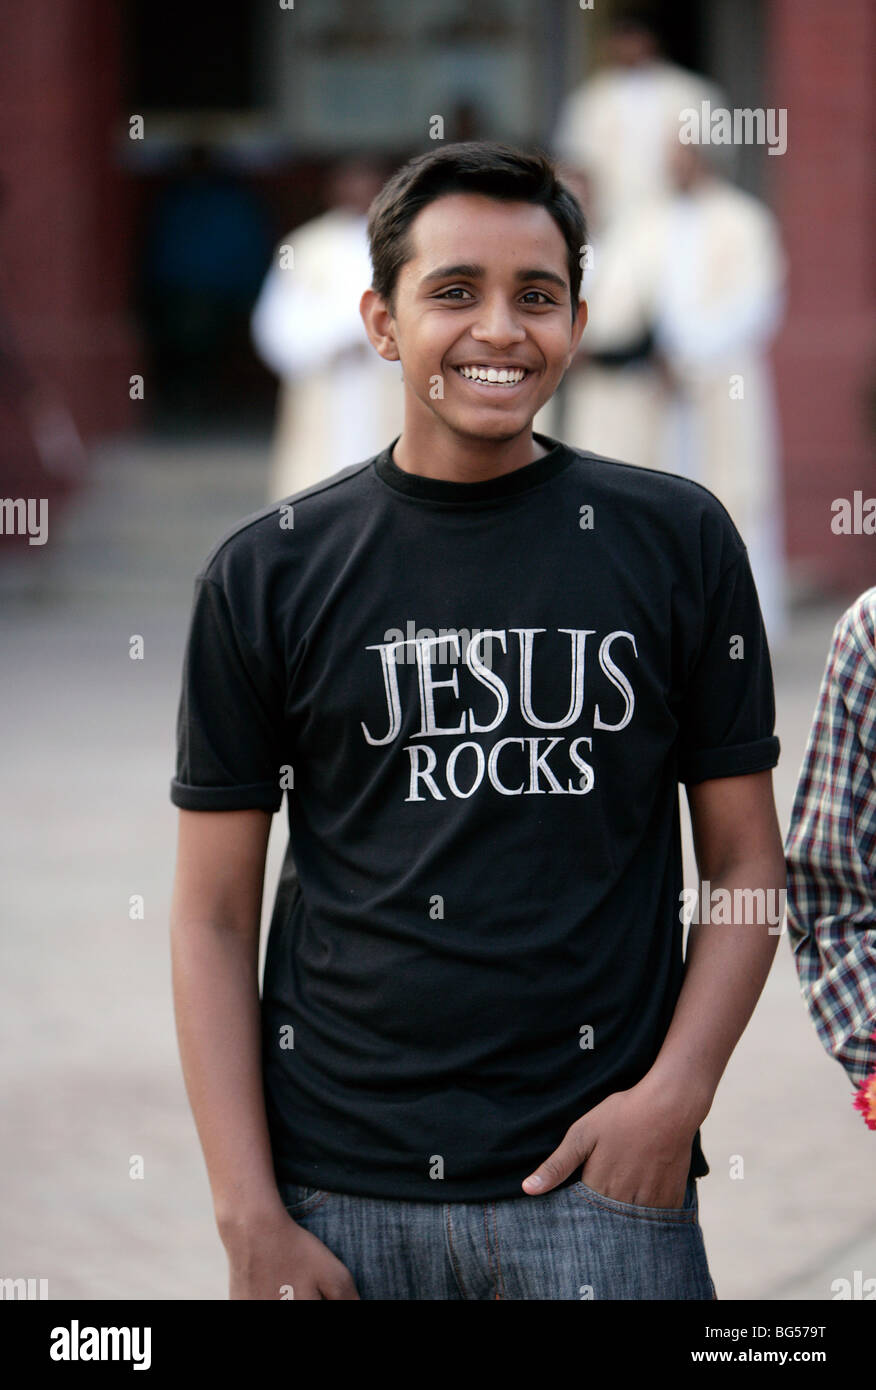 Giovane cristiano nel suo tema religioso shirt stampate Gesù rocce. Lucknow, India Foto Stock